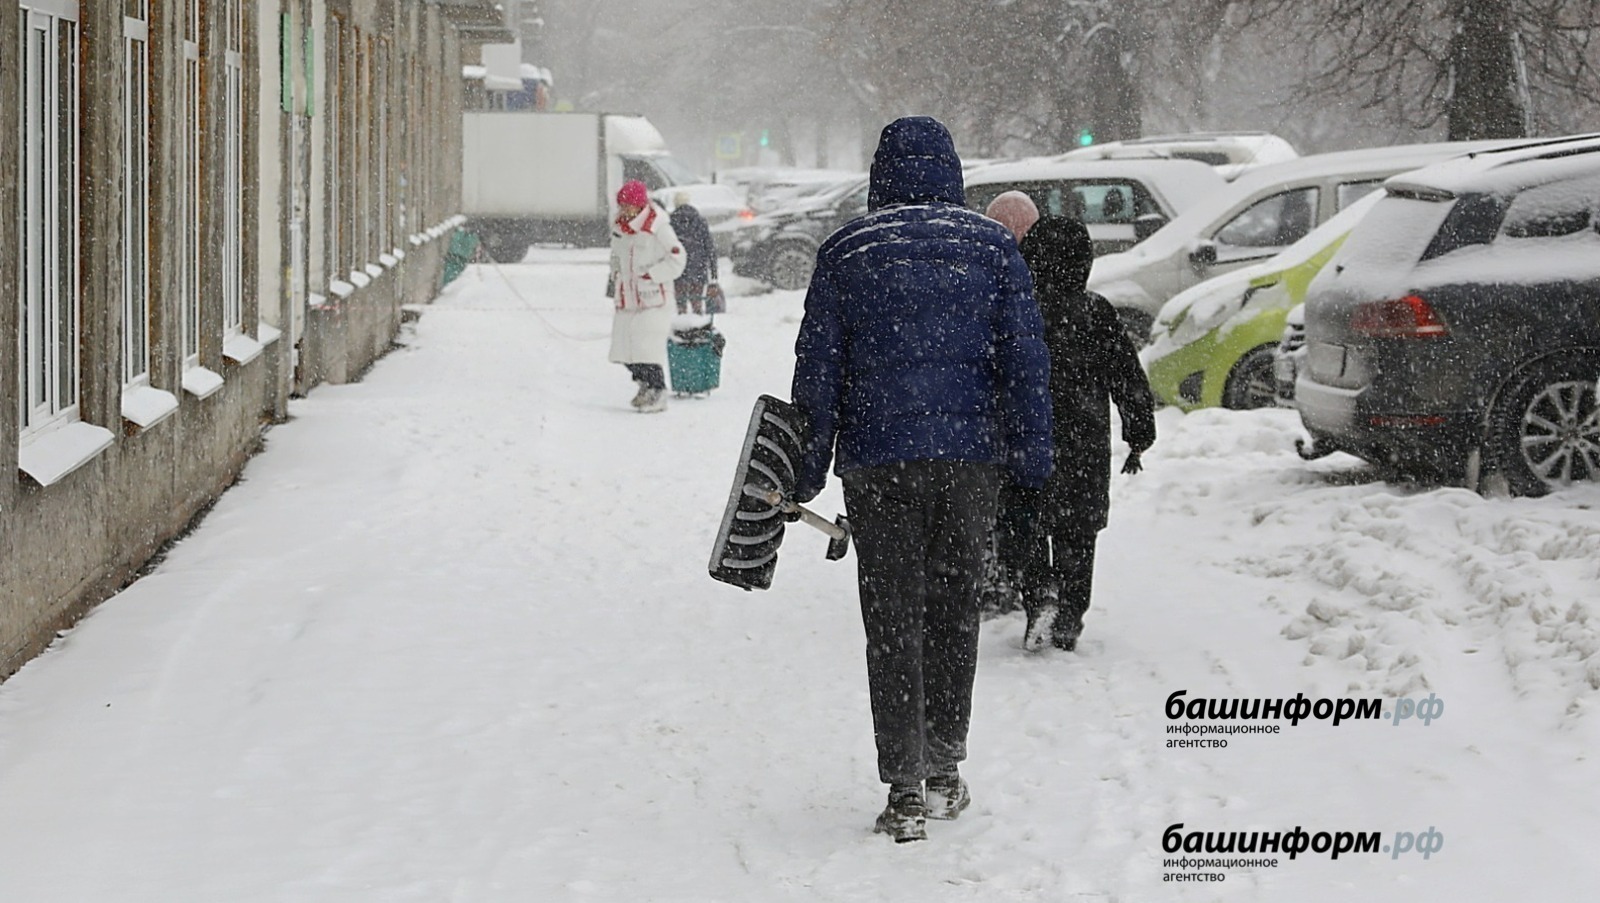 Погода в Башкирии на 7 марта: небольшой снег и похолодание до -13 градусов